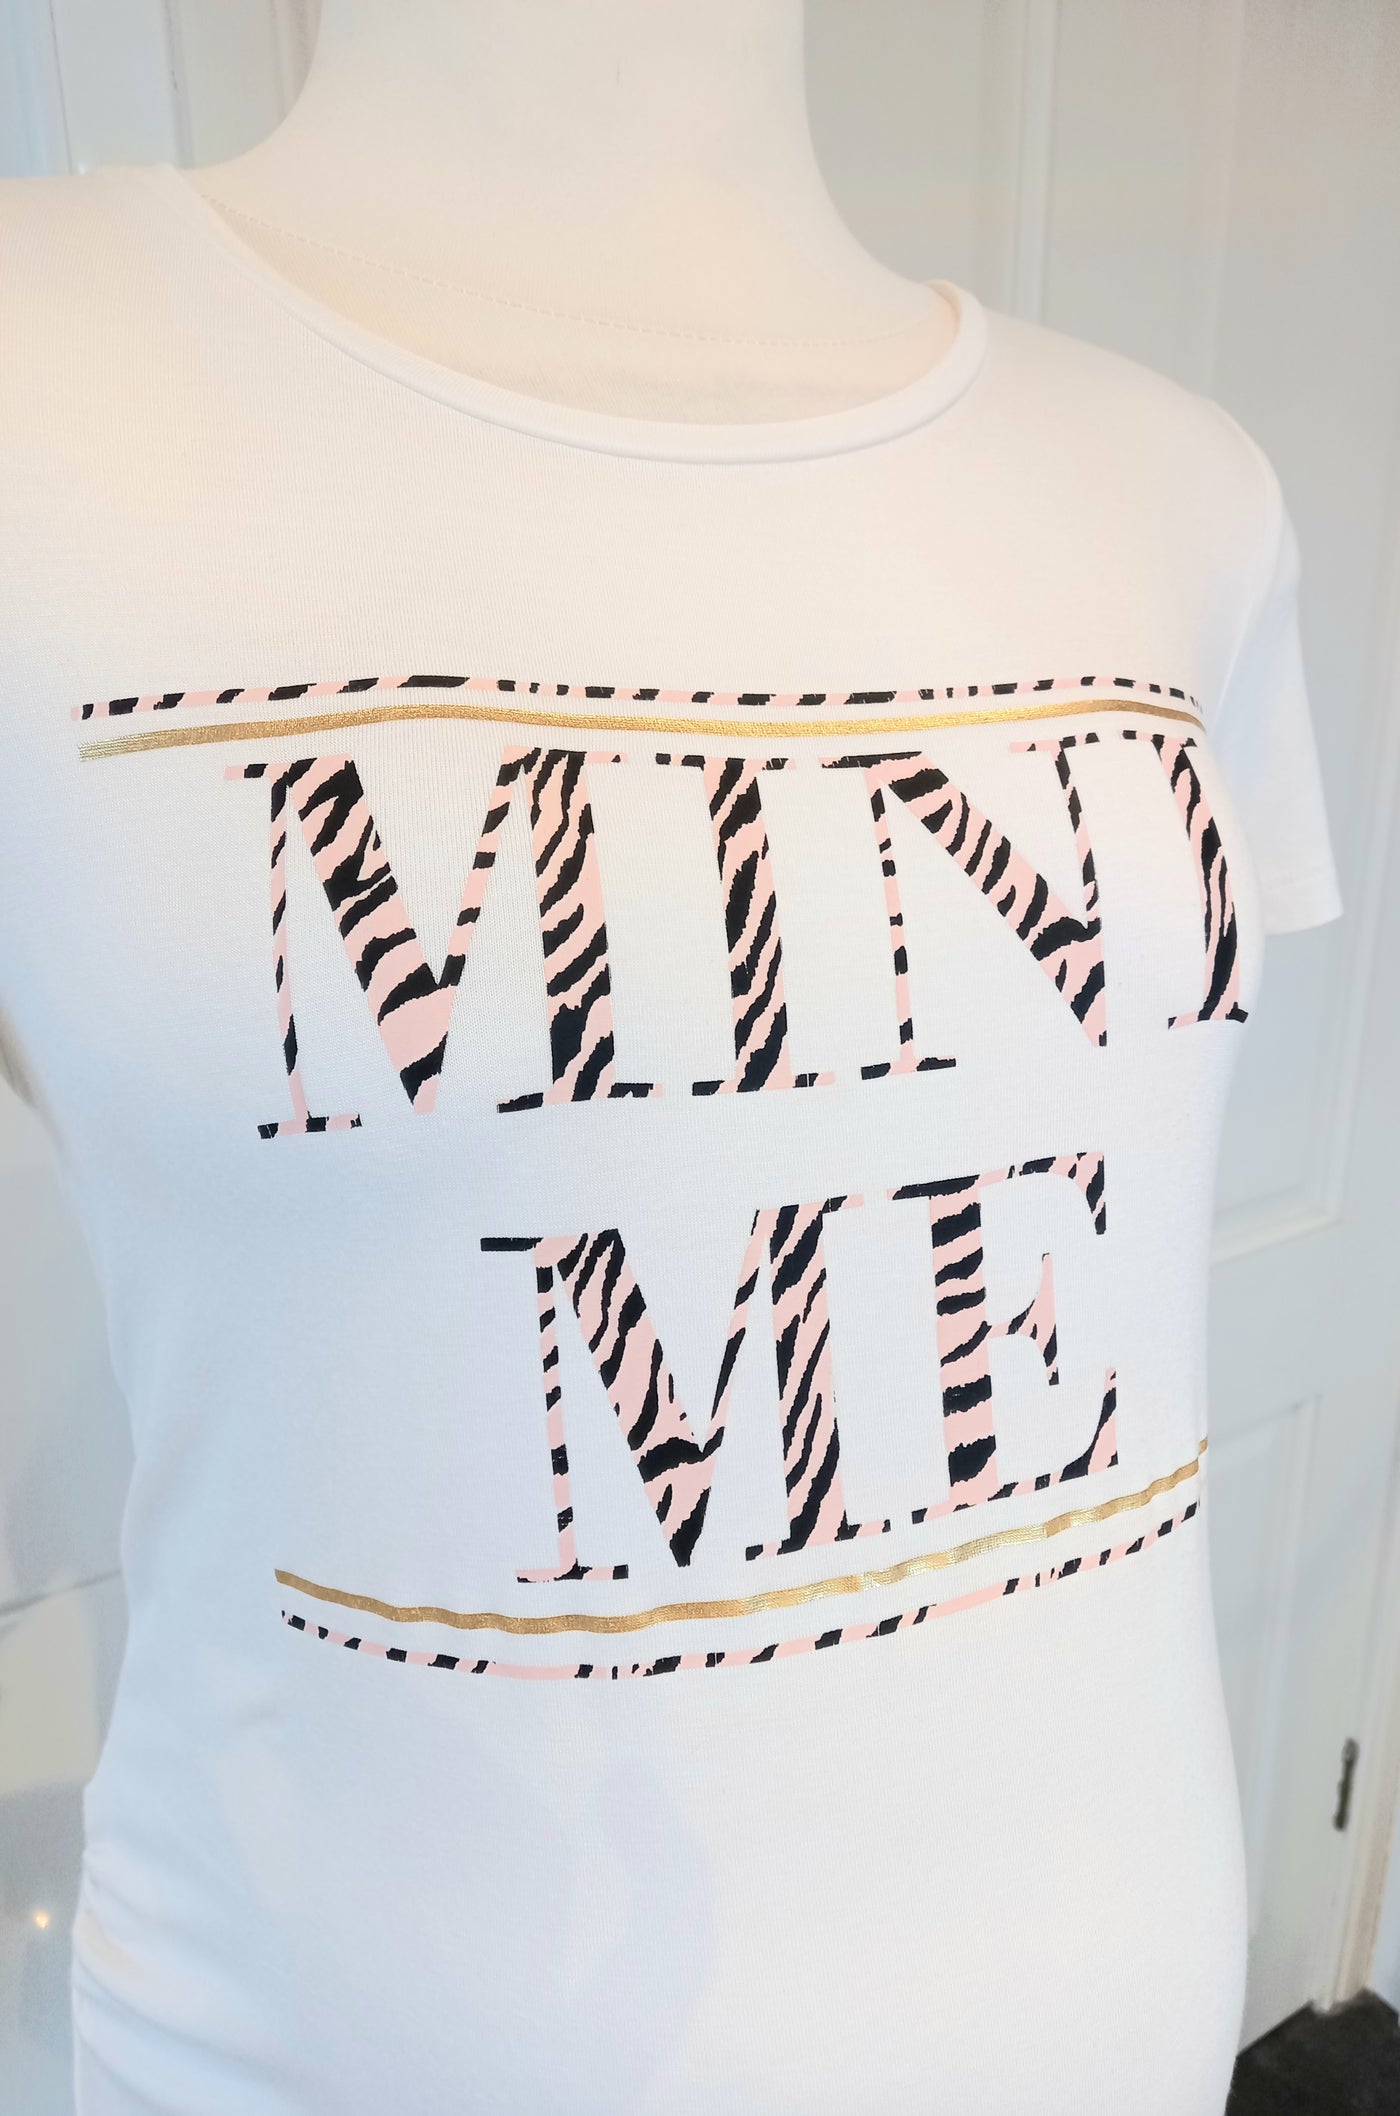 Dorothy Perkins Maternity White 'Mini Me' T-Shirt - Size 12